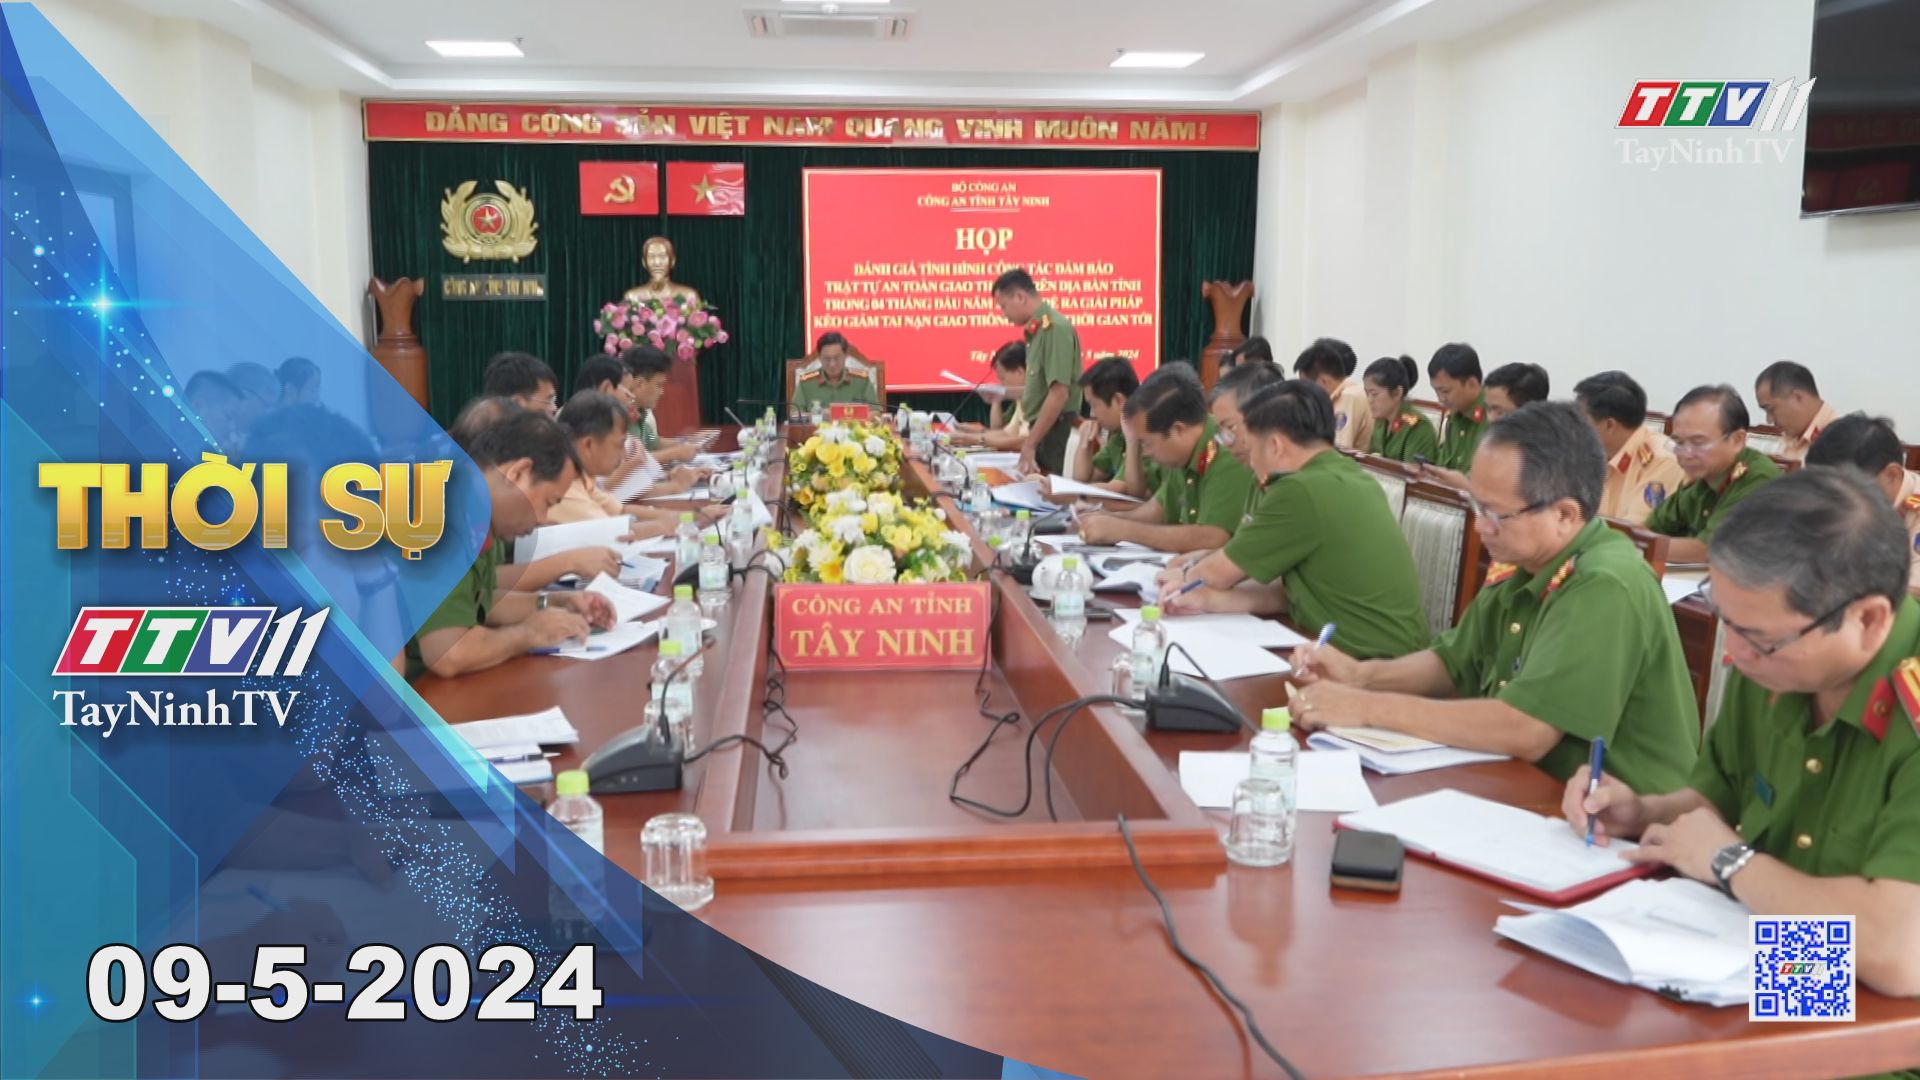 Thời sự Tây Ninh 09-5-2024 | Tin tức hôm nay | TayNinhTV